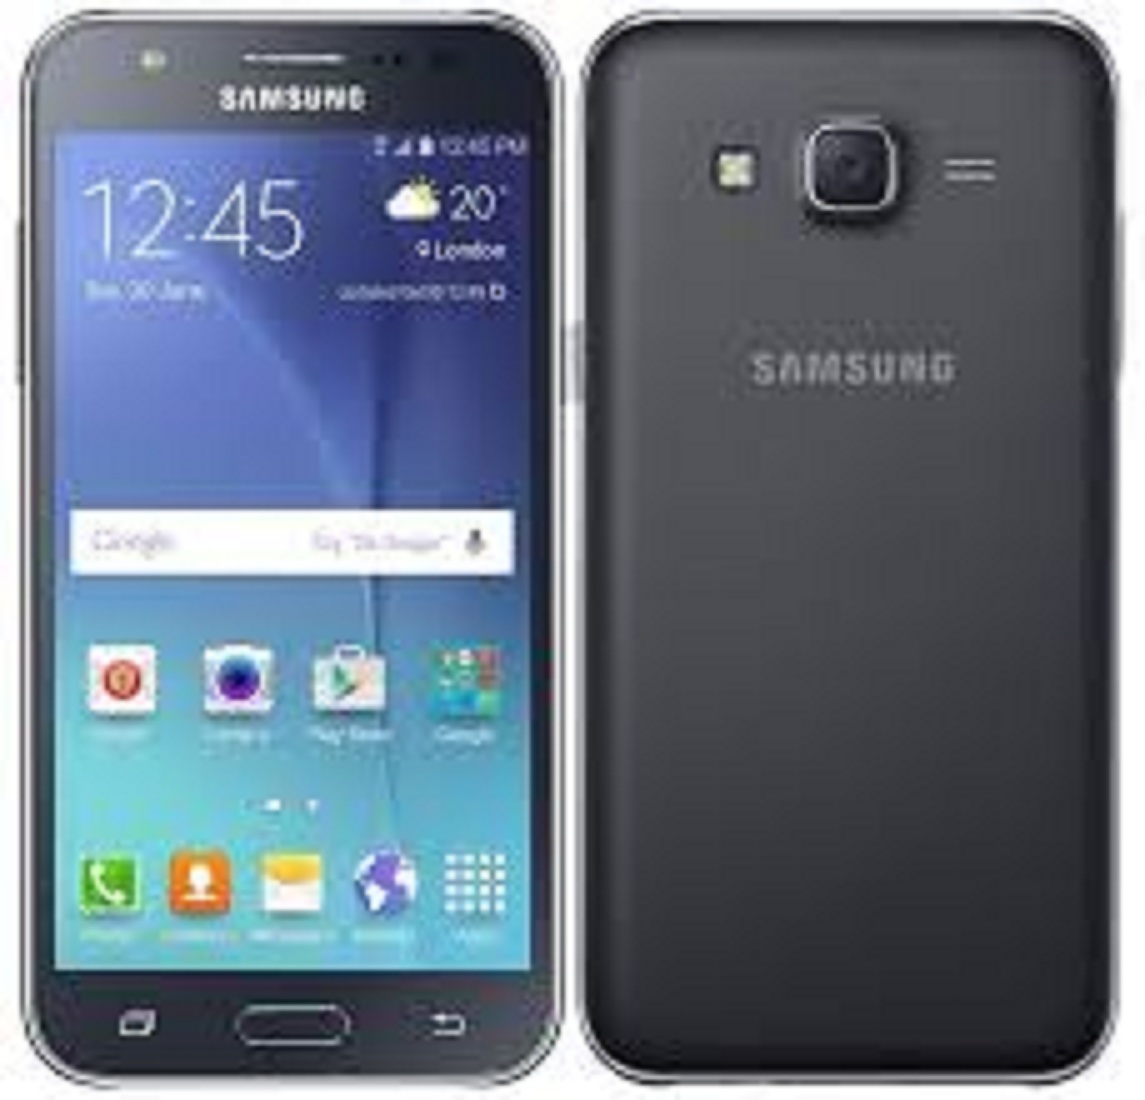 [ SALE SẬP SÀN ] điện thoại giá siêu rẻ Samsung Galaxy J5 (J500) máy 2sim Chính Hãng, nghe gọi tốt, cảm ứng mượt - Bảo hành 12 tháng